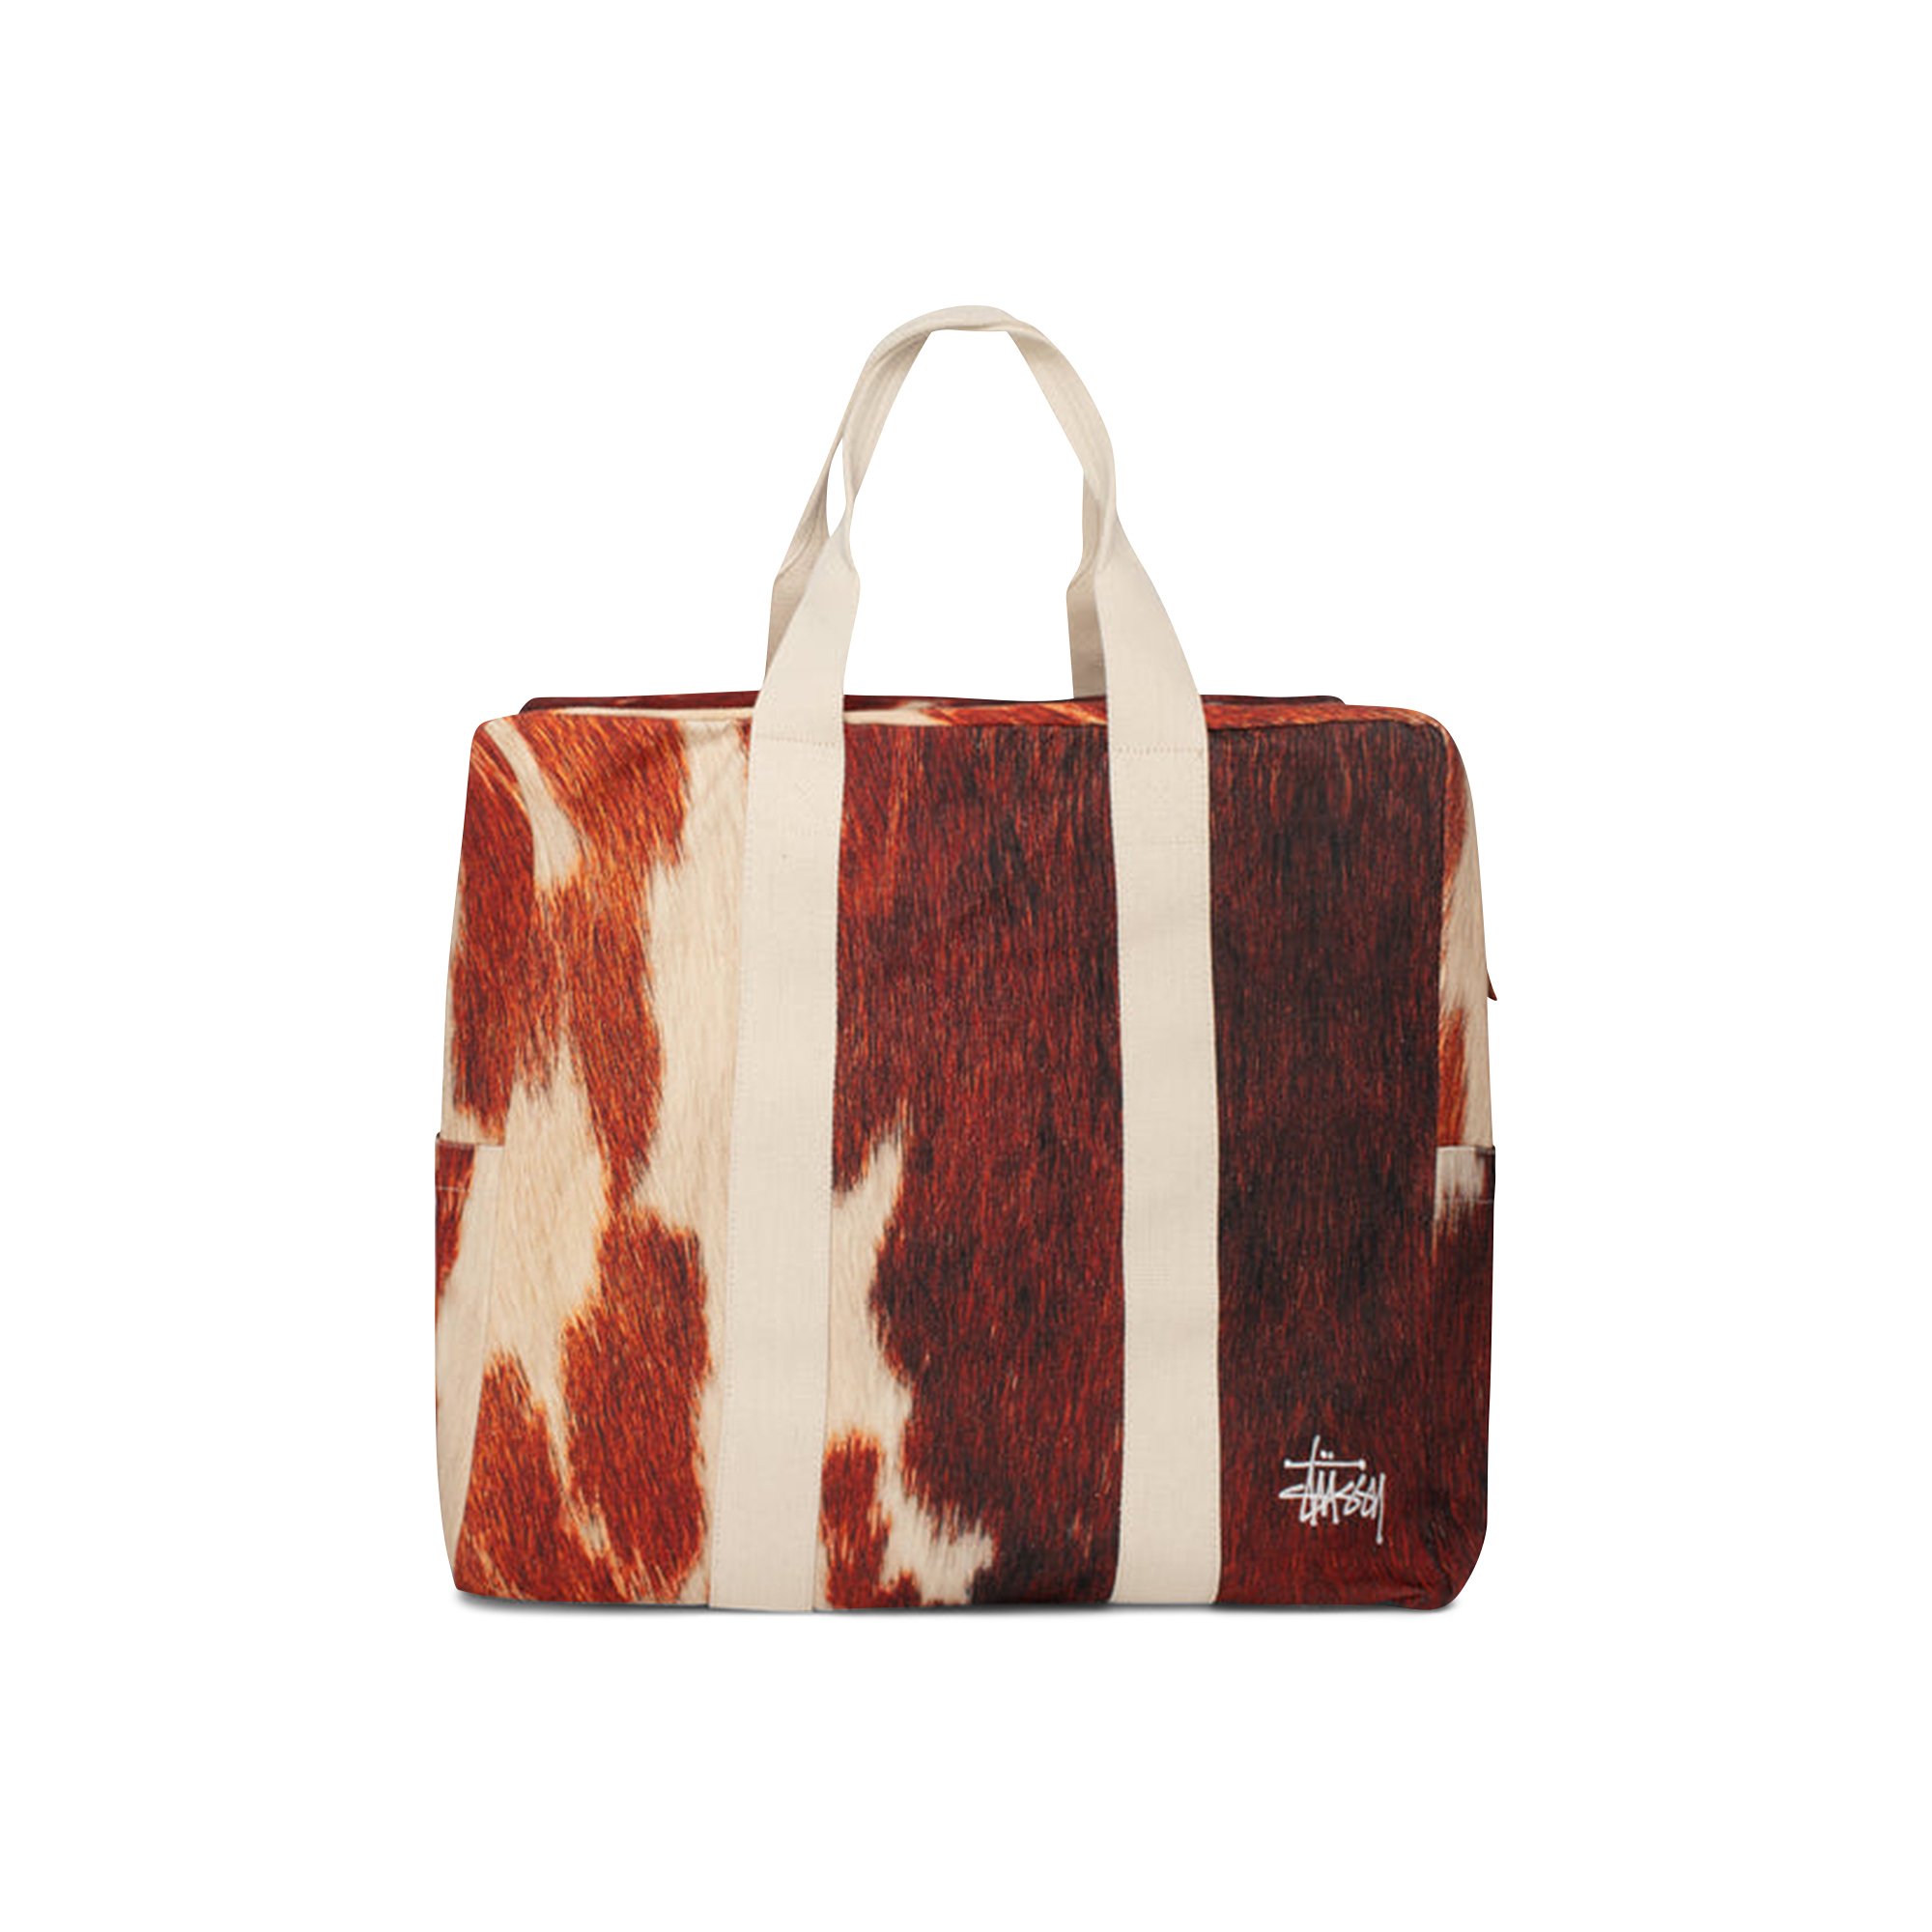 Buy Stussy Canvas Flight Bag 'Cowhide' - 134254 COWH | GOAT DE